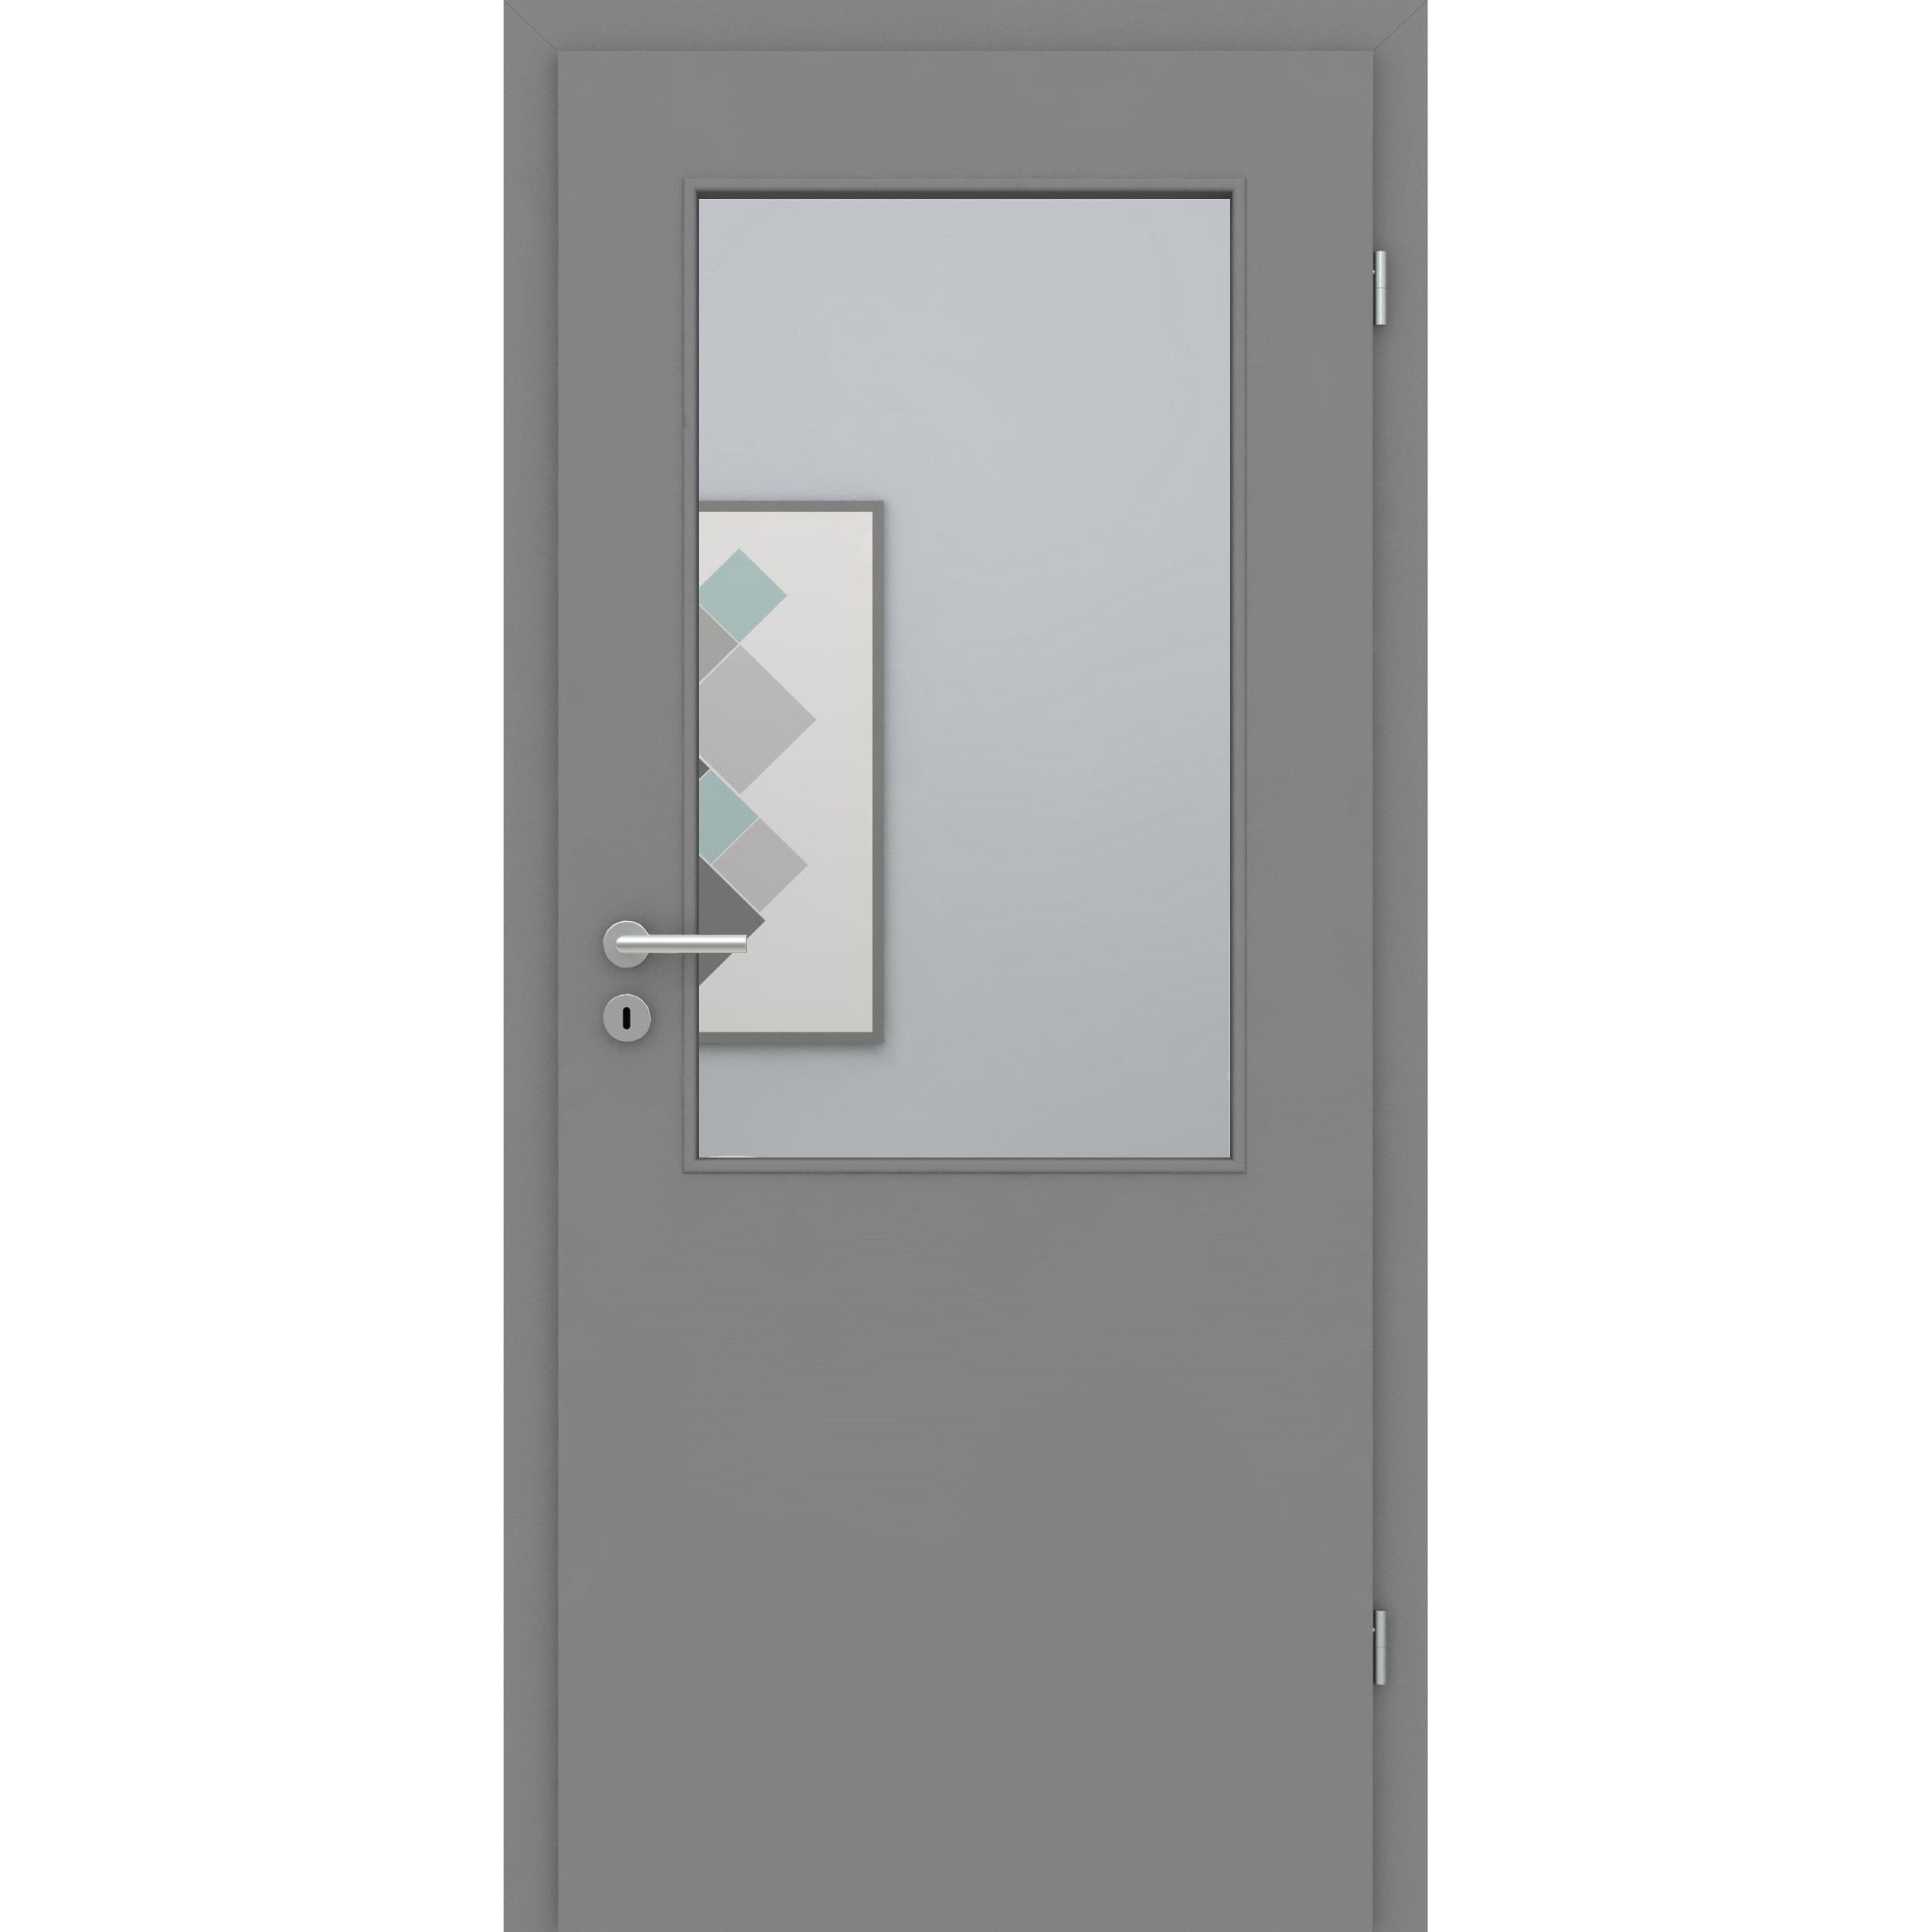 Zimmertür mit Lichtausschnitt grau glatt Designkante - Modell LAA